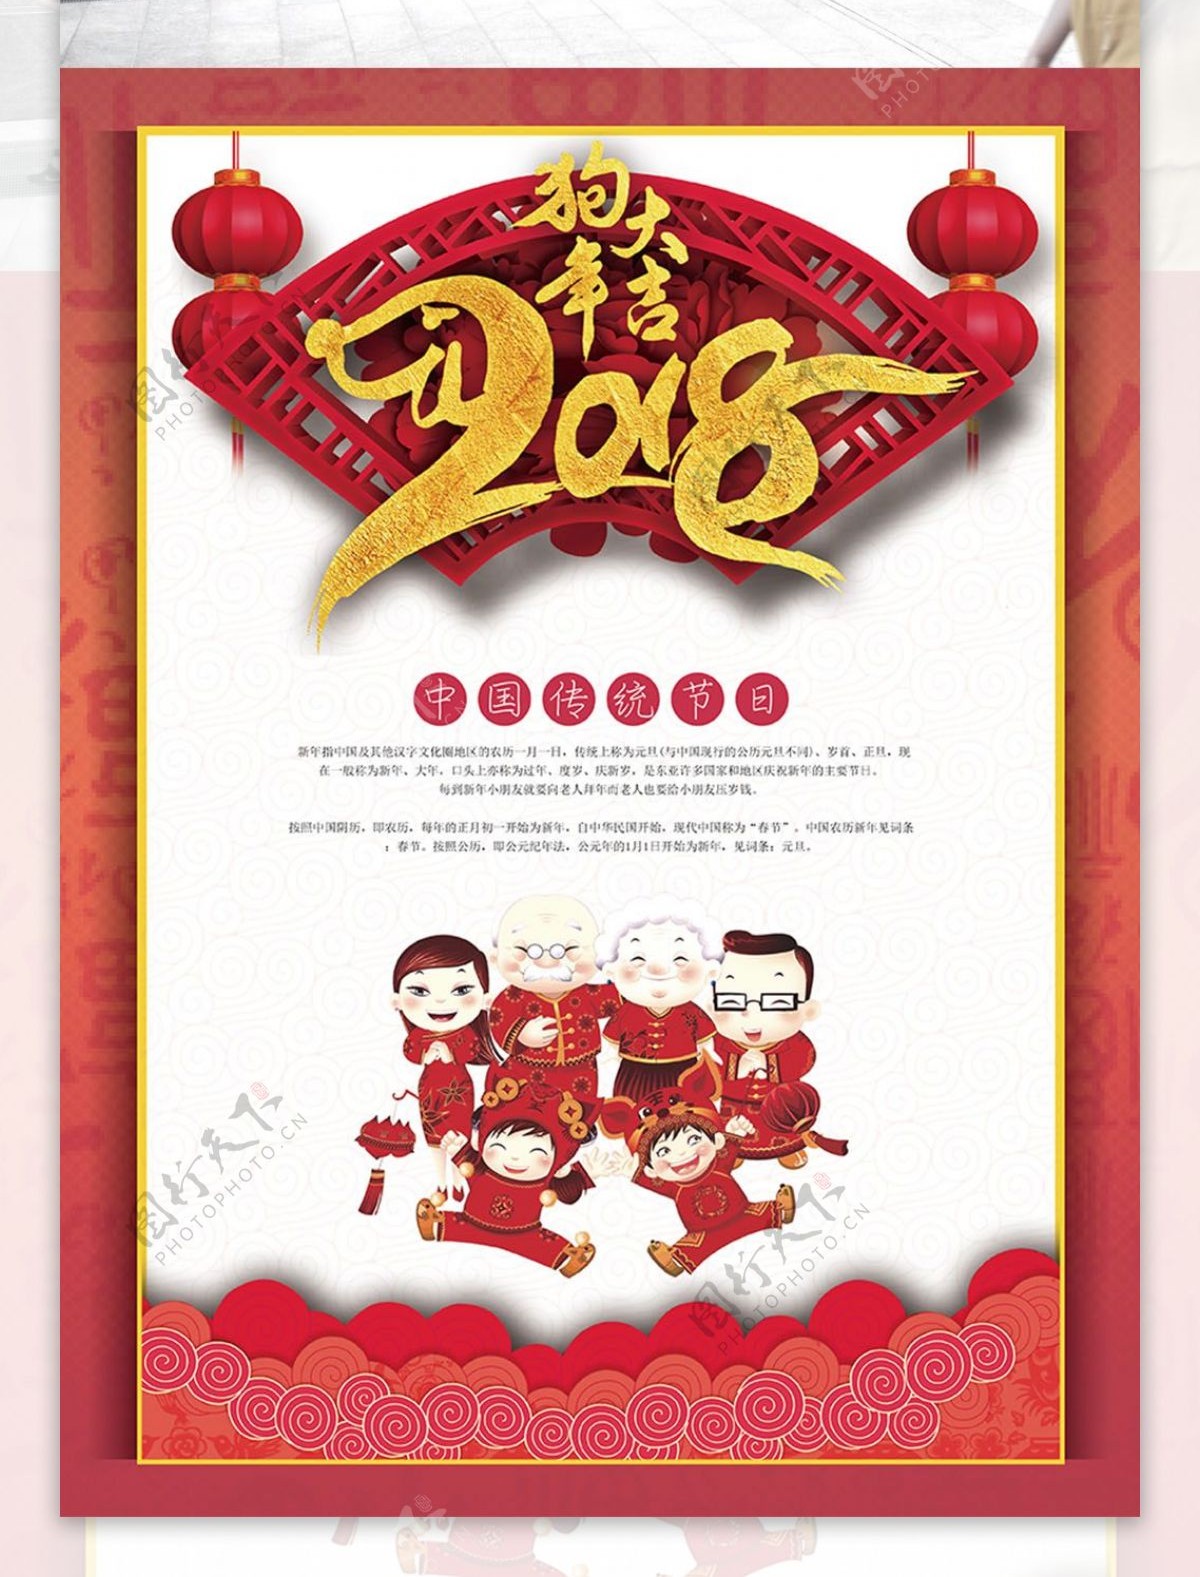 狗年大吉中国传统节日新年海报设计